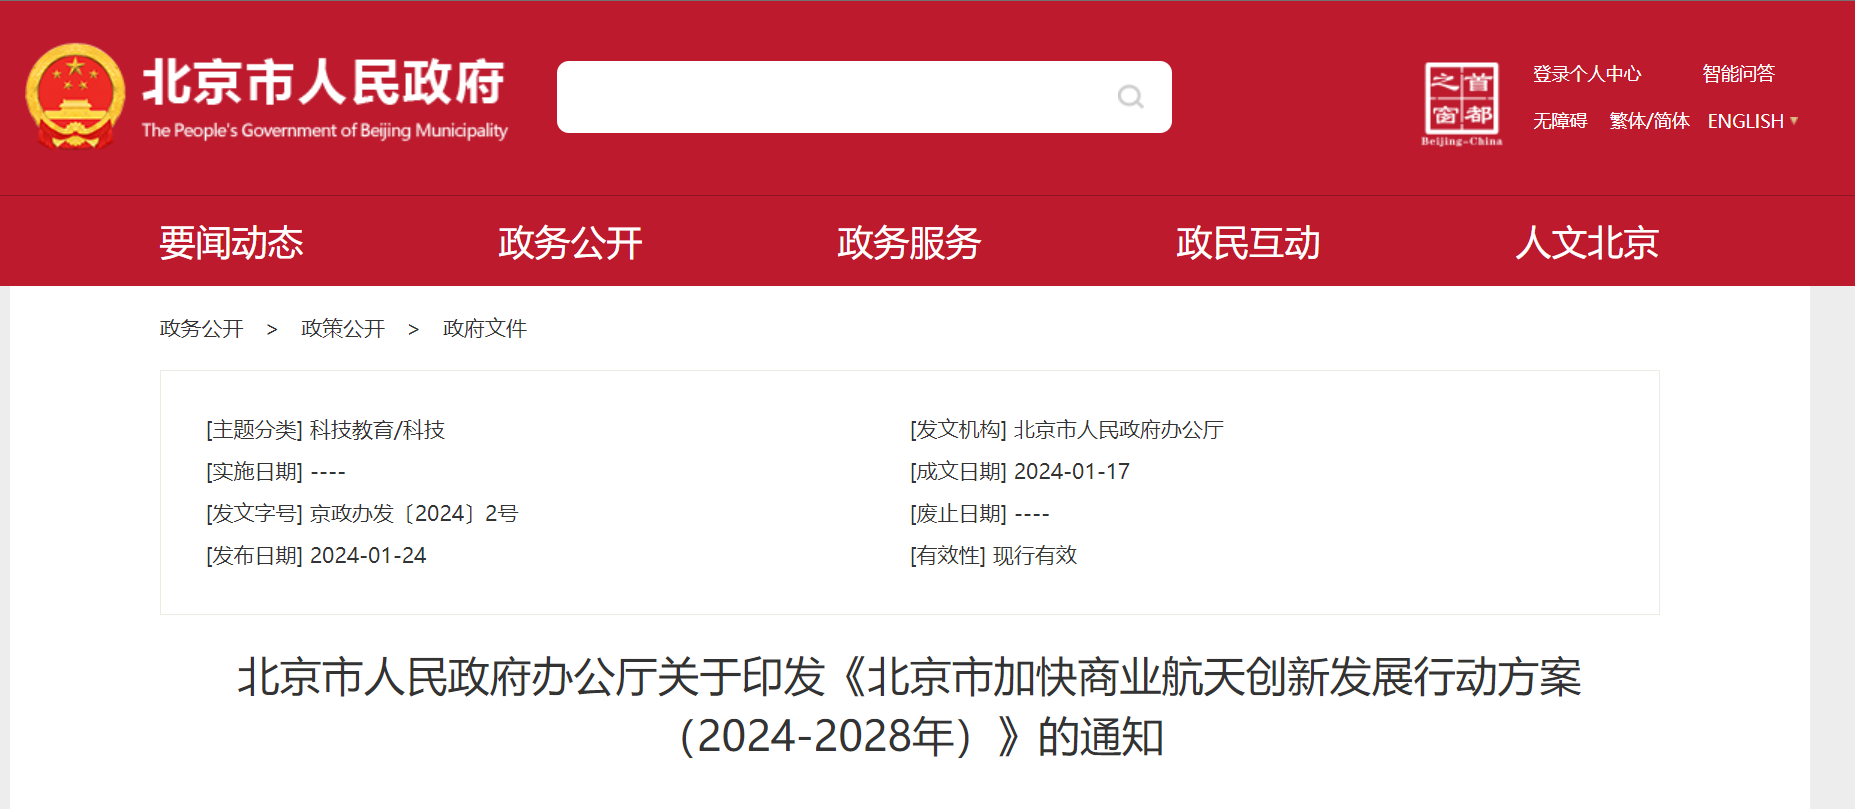 _北京市人民政府办公厅关于印发《北京市加快商业航天创新发展行动方案（2024-2028年）》的通知